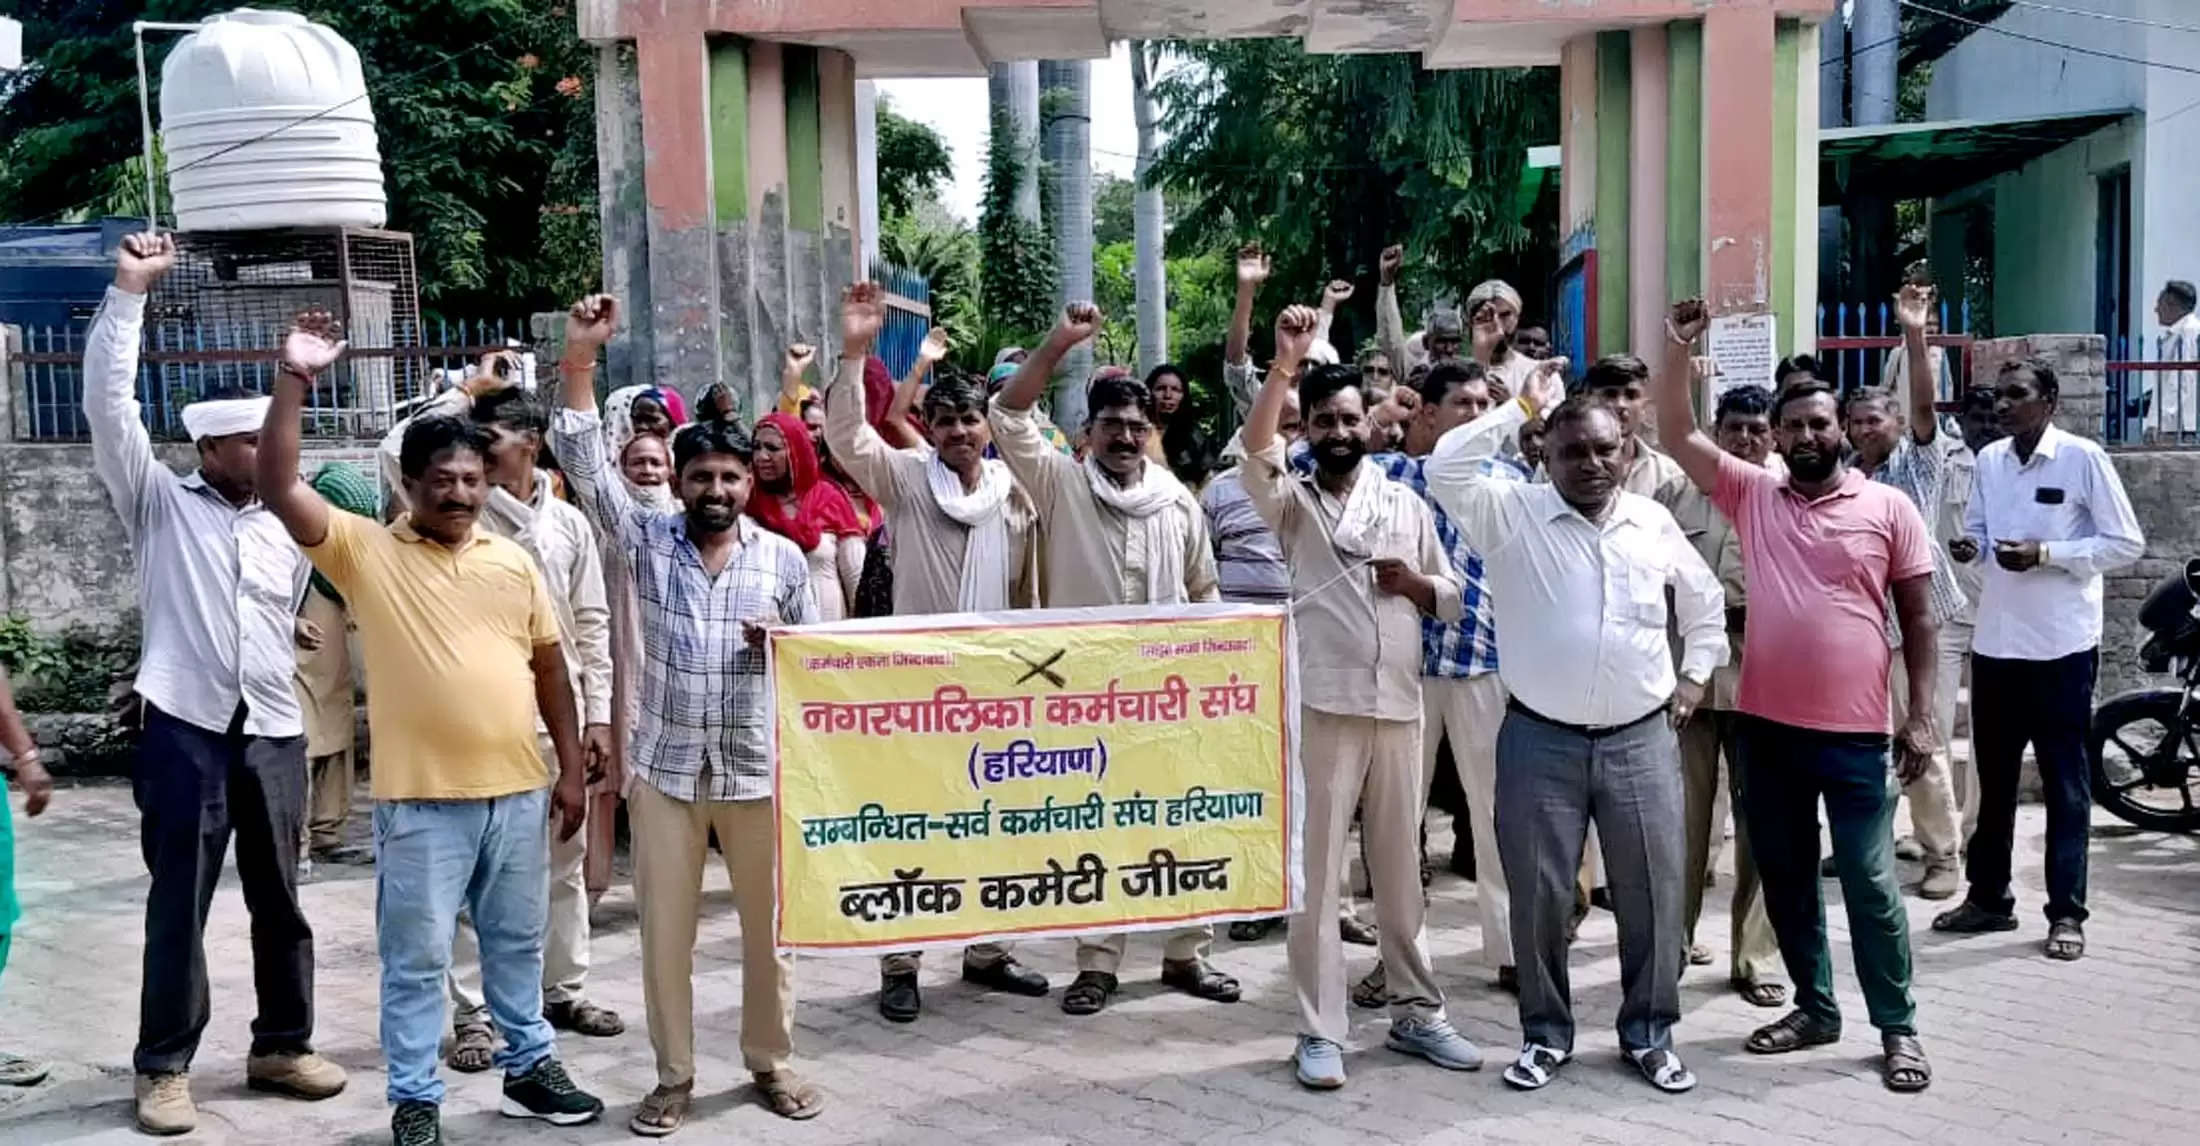 जींद : नगर परिषद सफाईकर्मियों ने हाथों में झाडू उठा किया प्रदर्शन